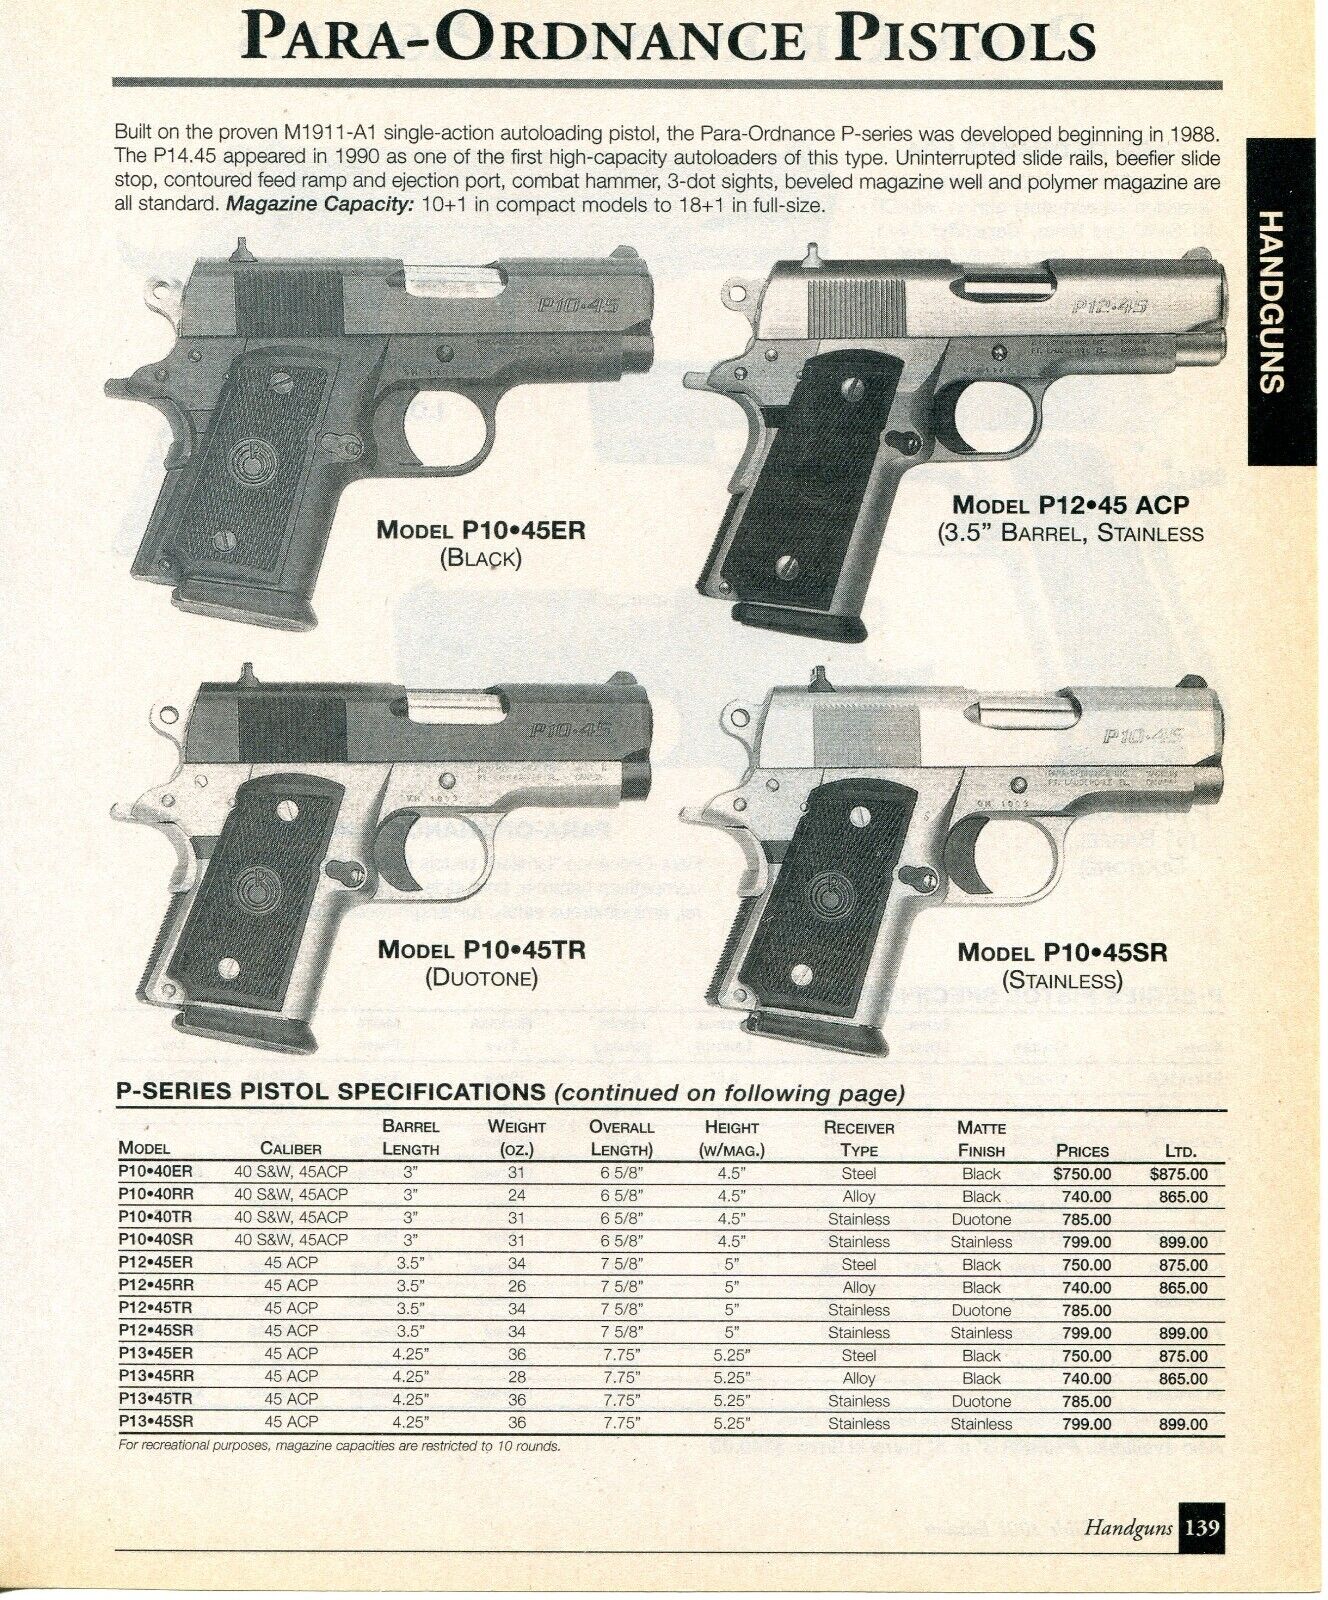 2001 Print Ad of Para Ordnance Pistol Model P10-45ER LDA P13 P16-40 P10-45SR P12